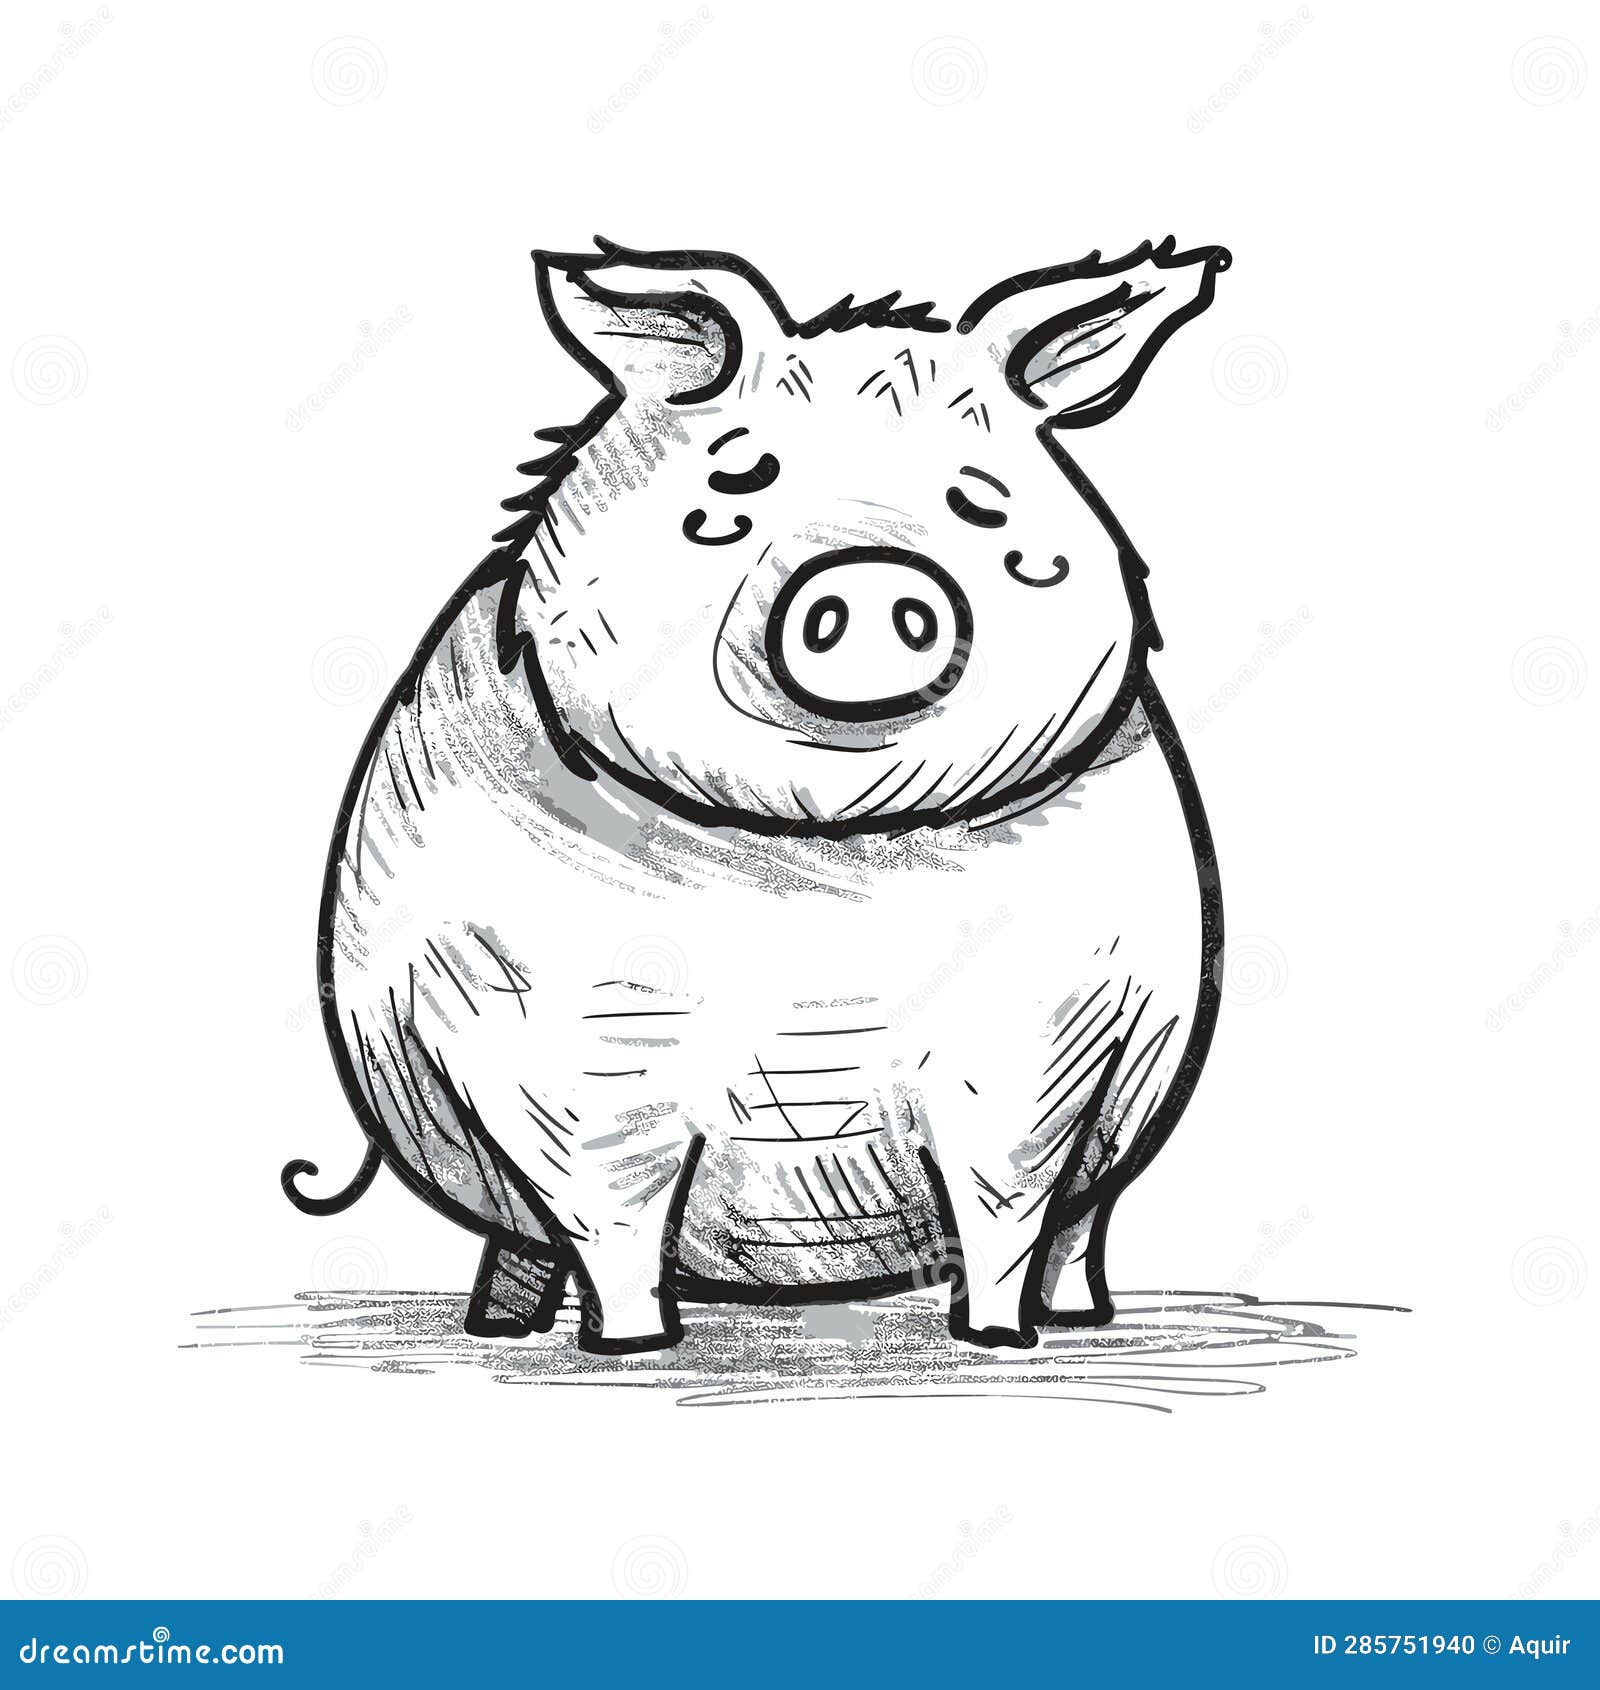 뿌리다 귀여운 동물 일러스트 핑크색 돼지, 핑크색, 귀여운 동물, 핑크색 돼지 PNG 일러스트 및 PSD 이미지 무료 다운로드 - Pngtree